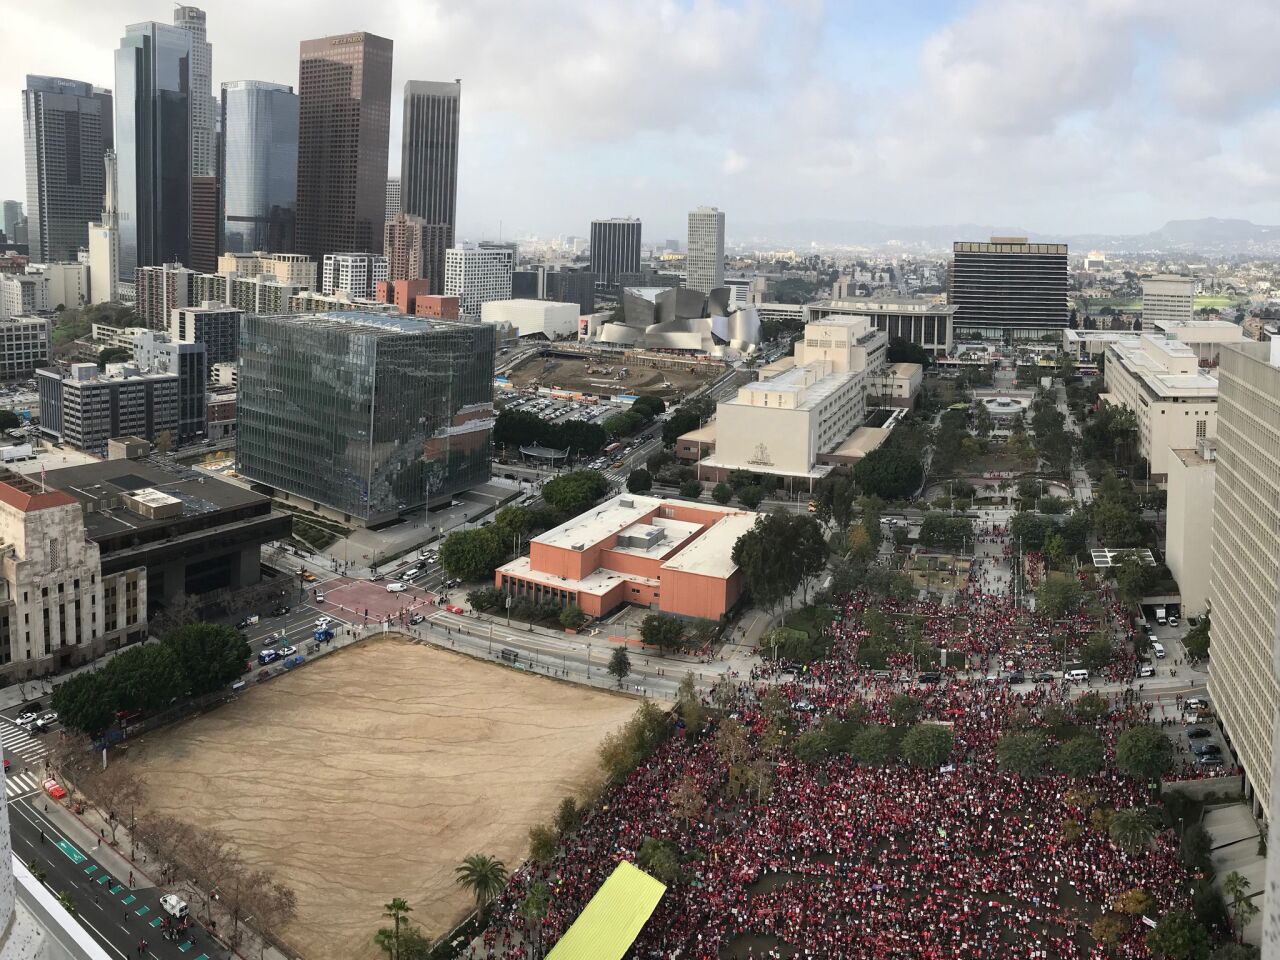 L.A. teachers go on strike